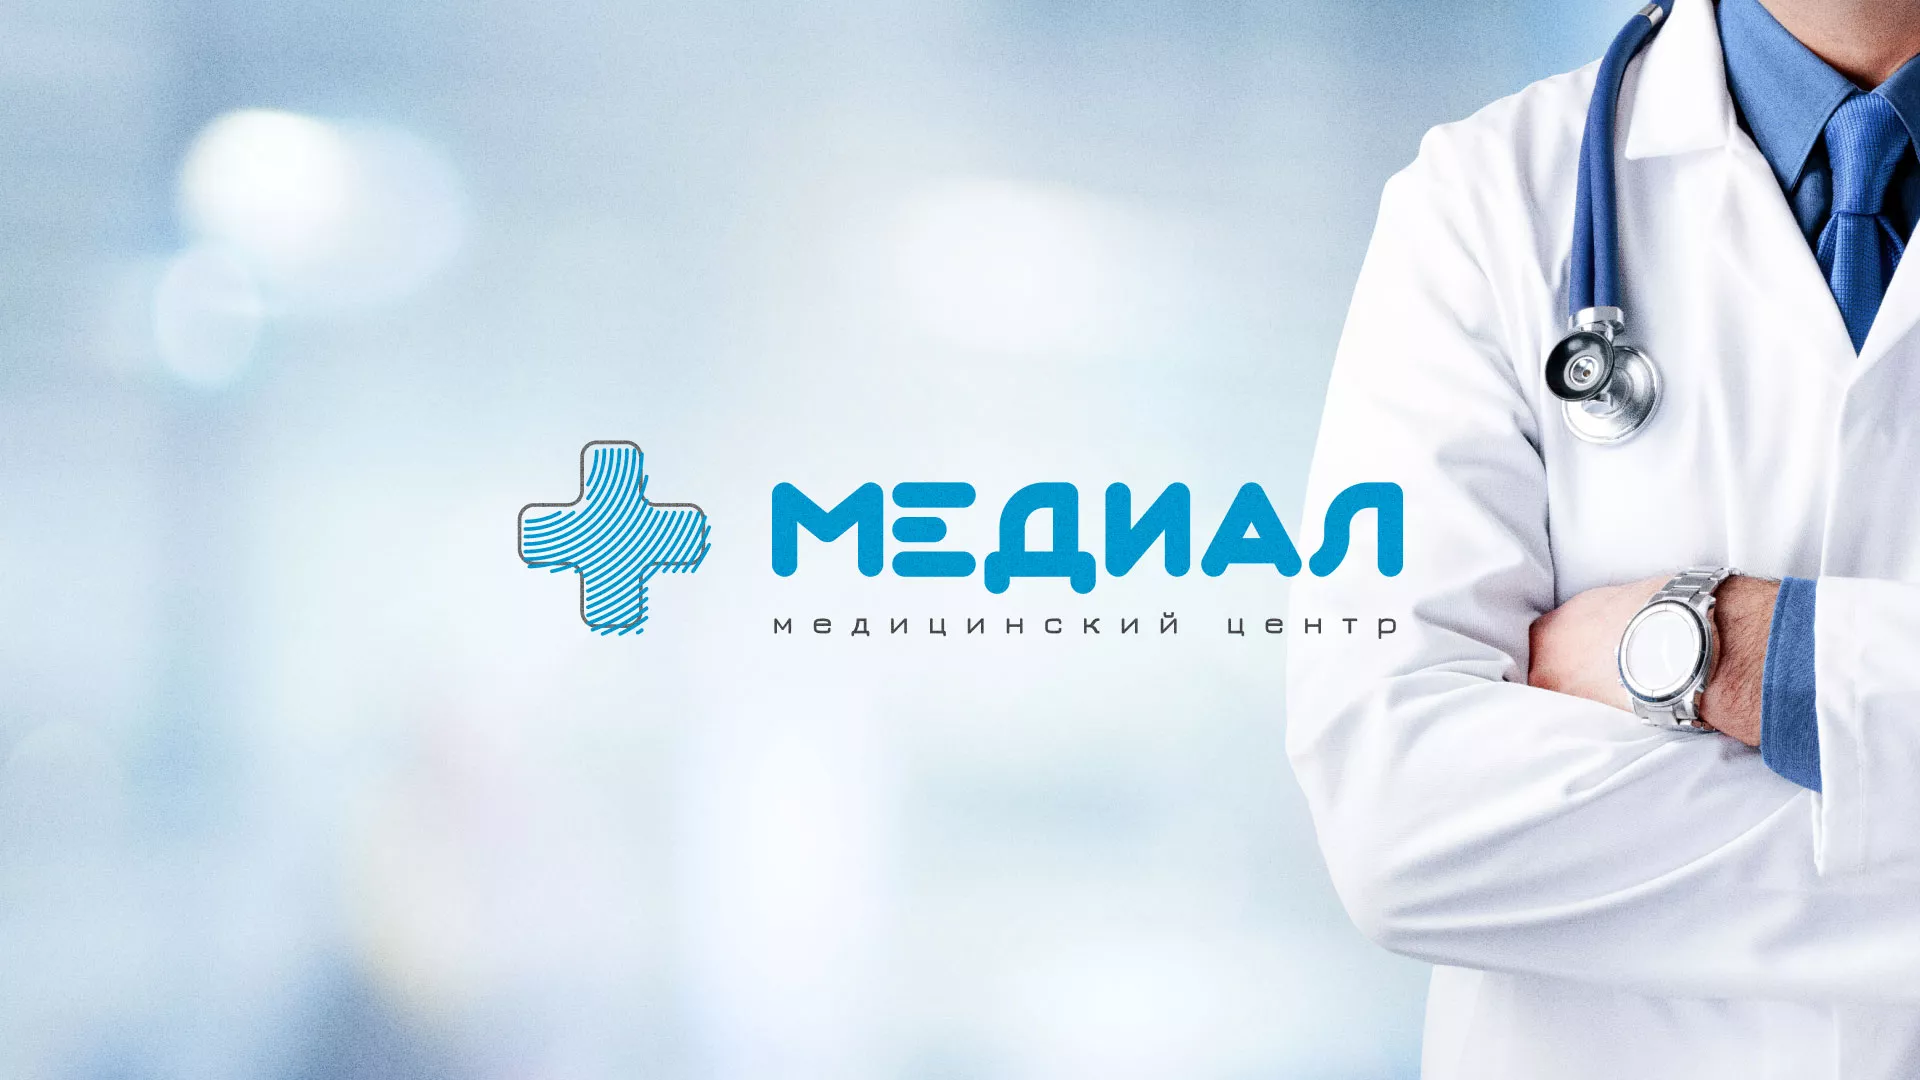 Создание сайта для медицинского центра «Медиал» в Данилове